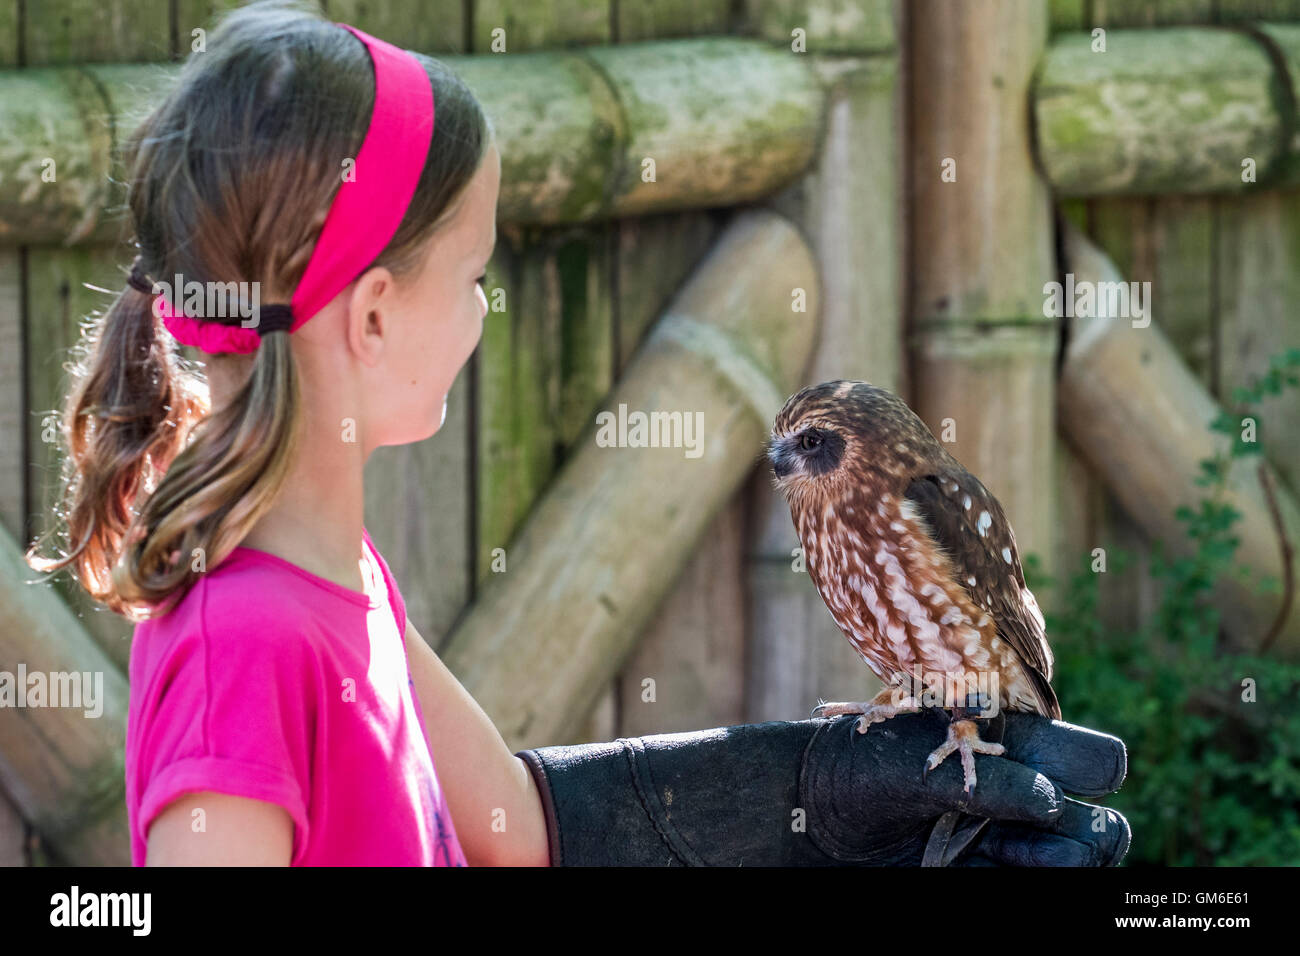 Little girl holding owl en main couverte de Falconer's glove Banque D'Images